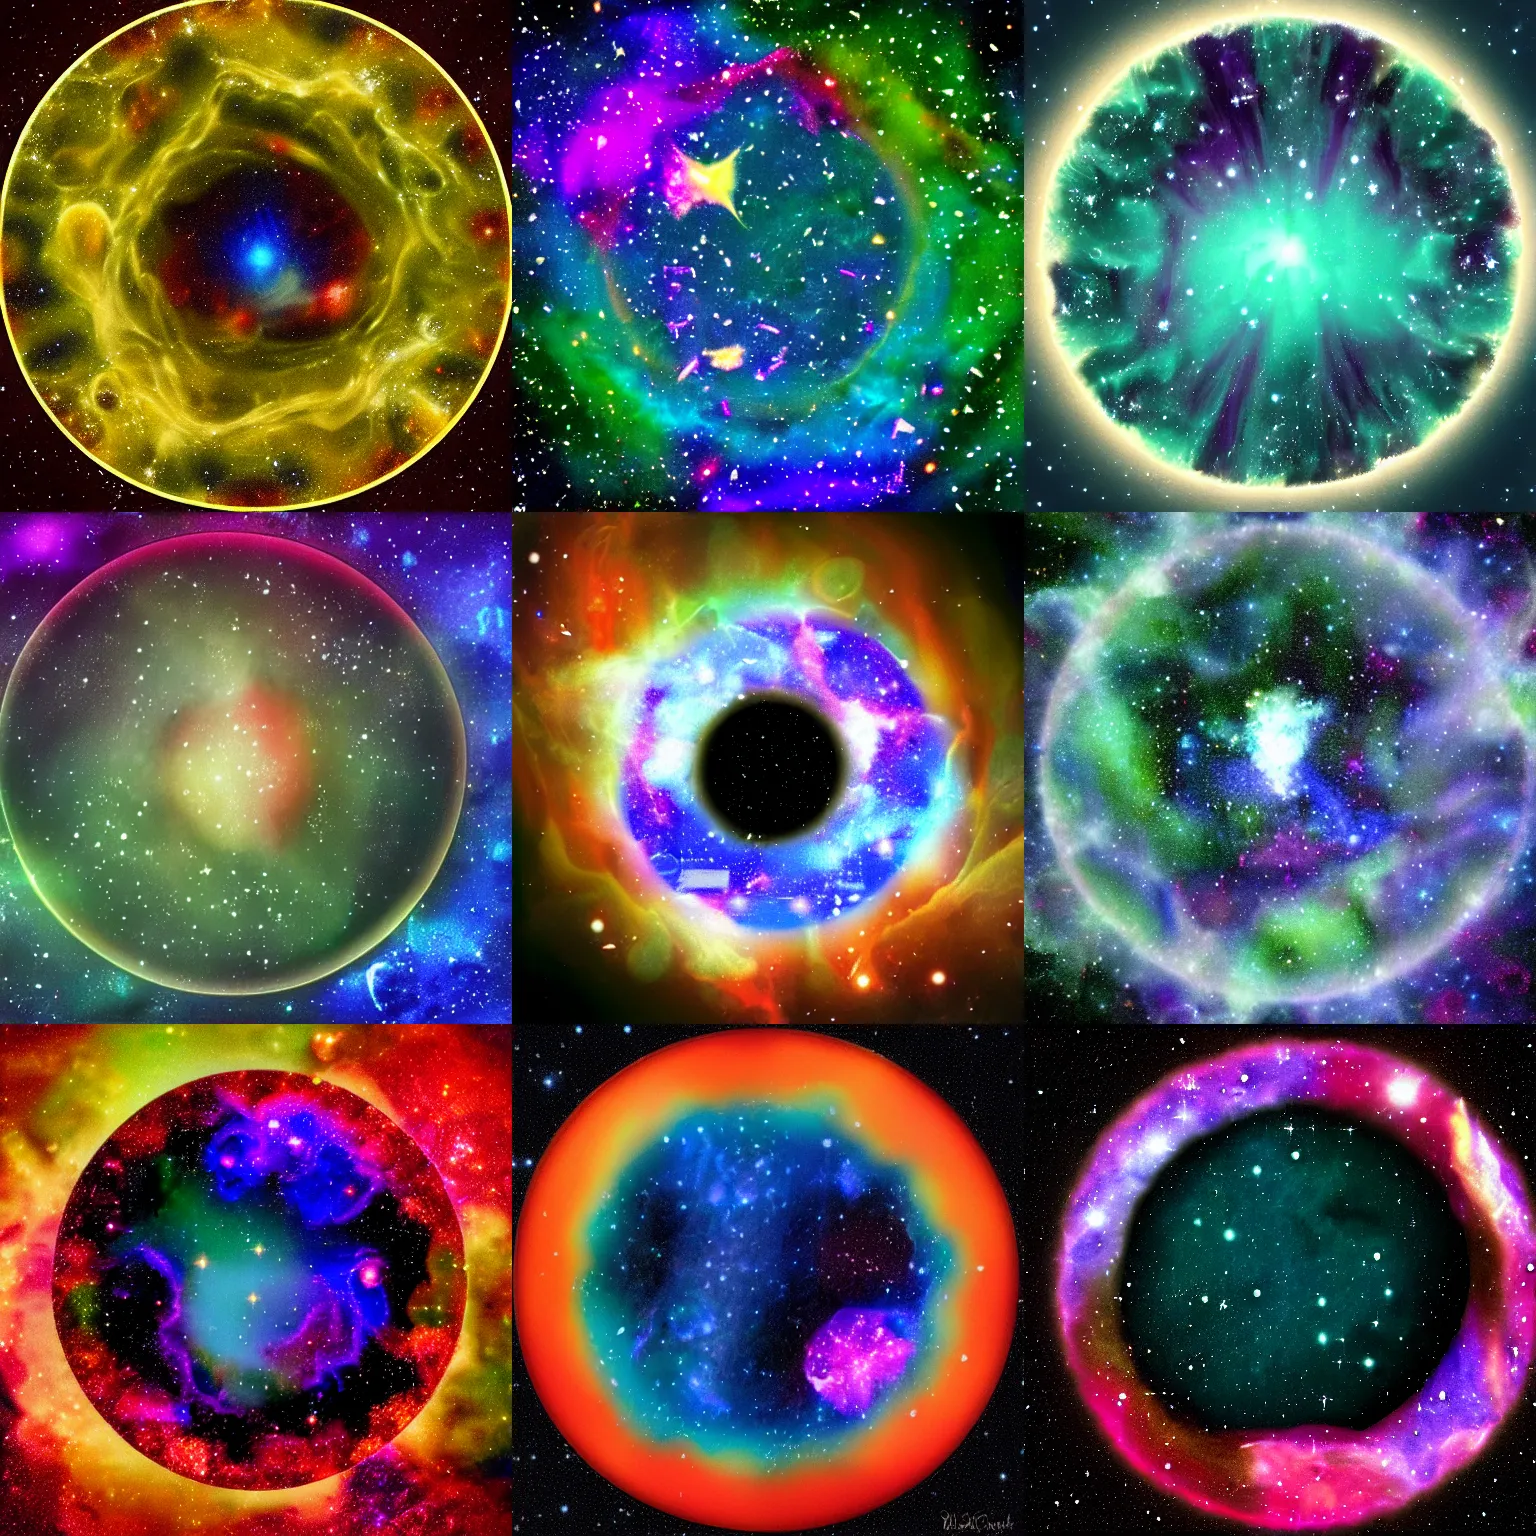 Prompt: a nebula inside a petri dish, digital art